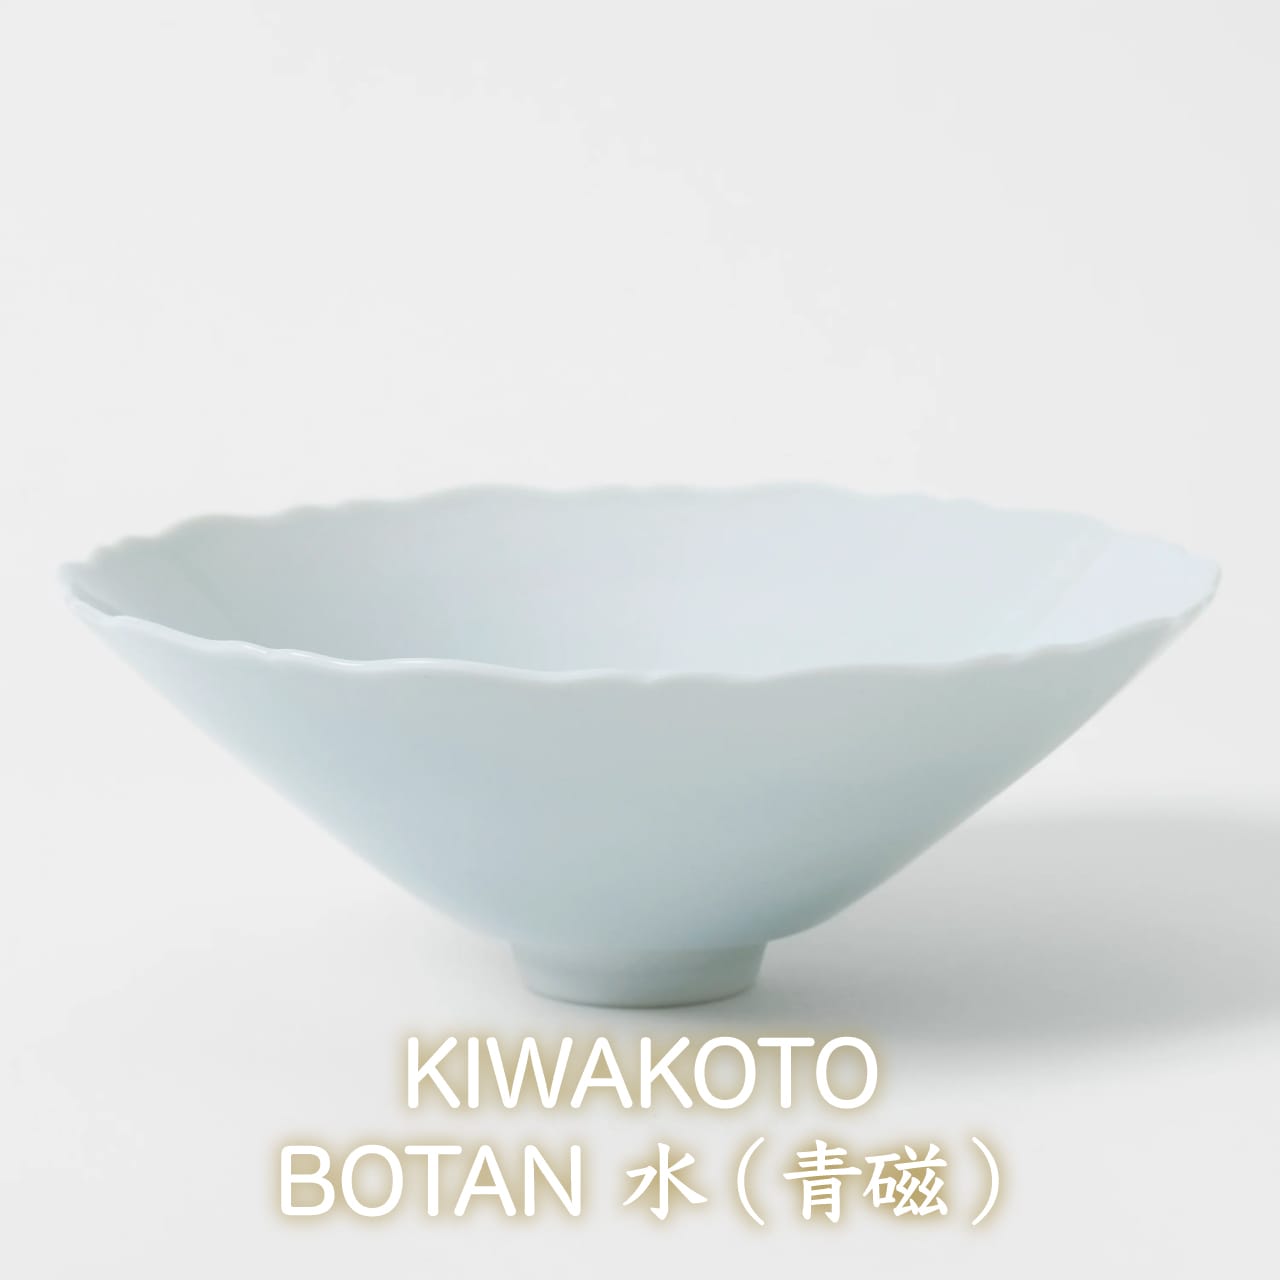 【コトブキウミサチコラボ】コトブキ海鮮丼&KIWAKOTO 器のBOTAN 水(青磁) とTSUBAKI霙(白結晶)  セット